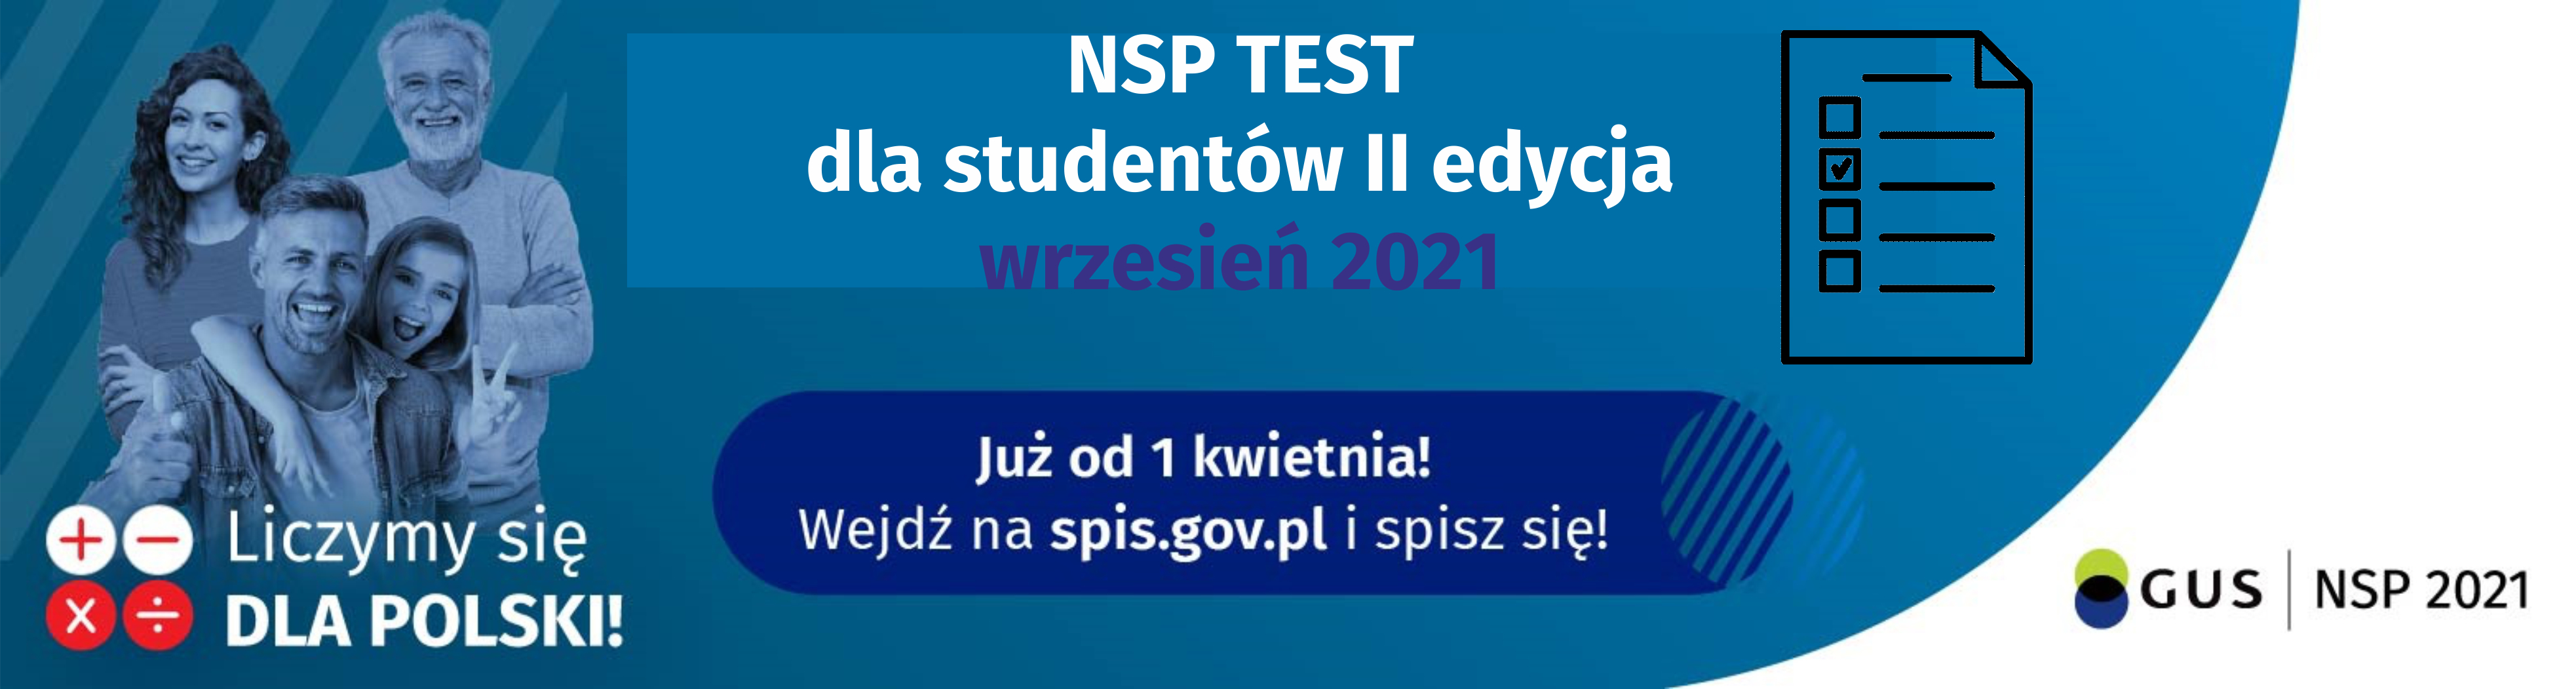 NSP test dla studentów II edycja